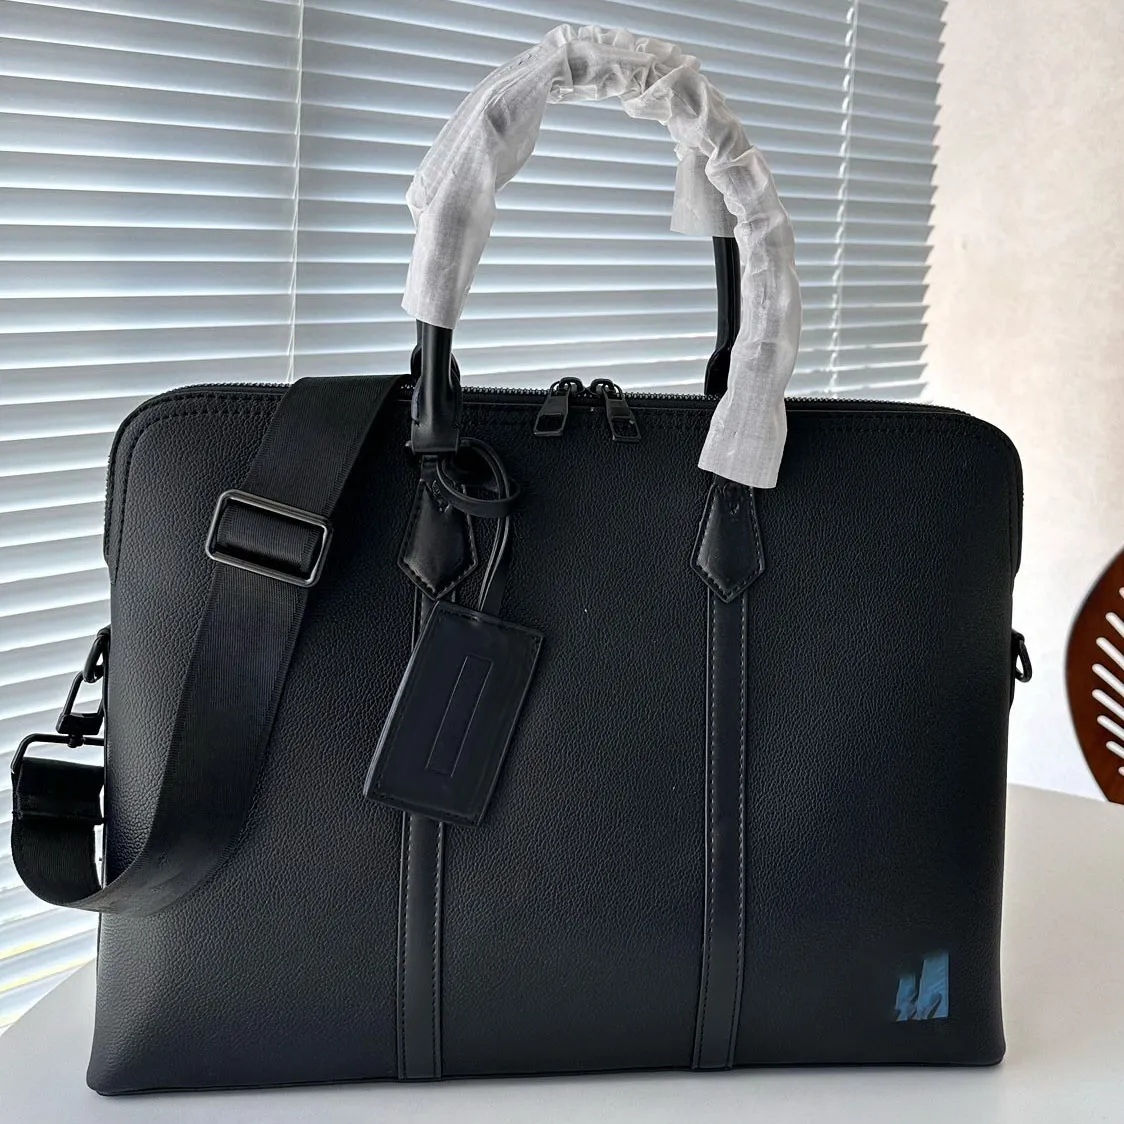 Berühmte Designerin Männer Leder Aktentasche Business Messenger Bag Outdoor Work Bag Umhängetasche Frauen lässig Cross-Body Bag Travent Bag Business Handtasche Laptop Tasche